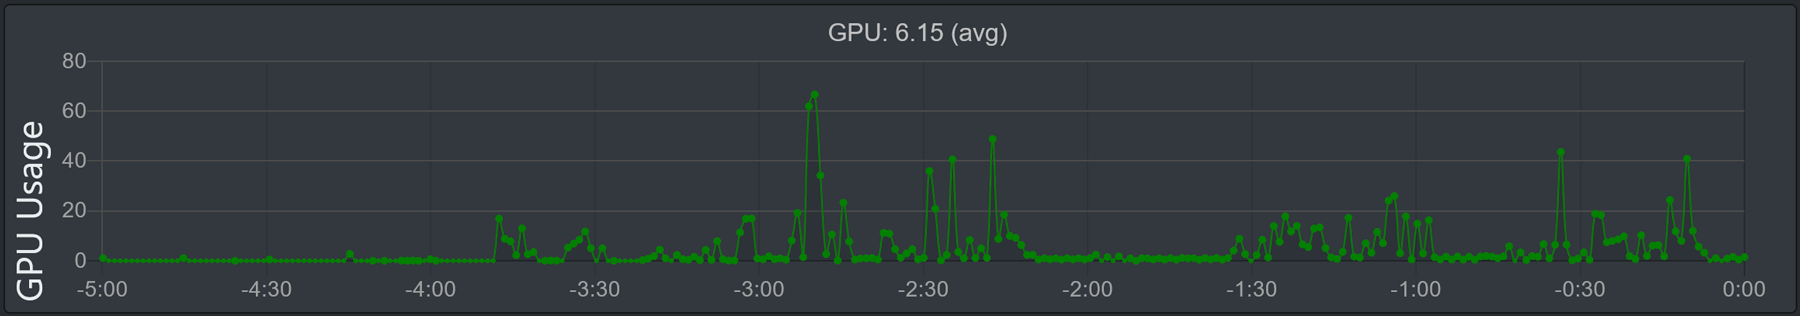 Imej graf 'Penggunaan GPU'